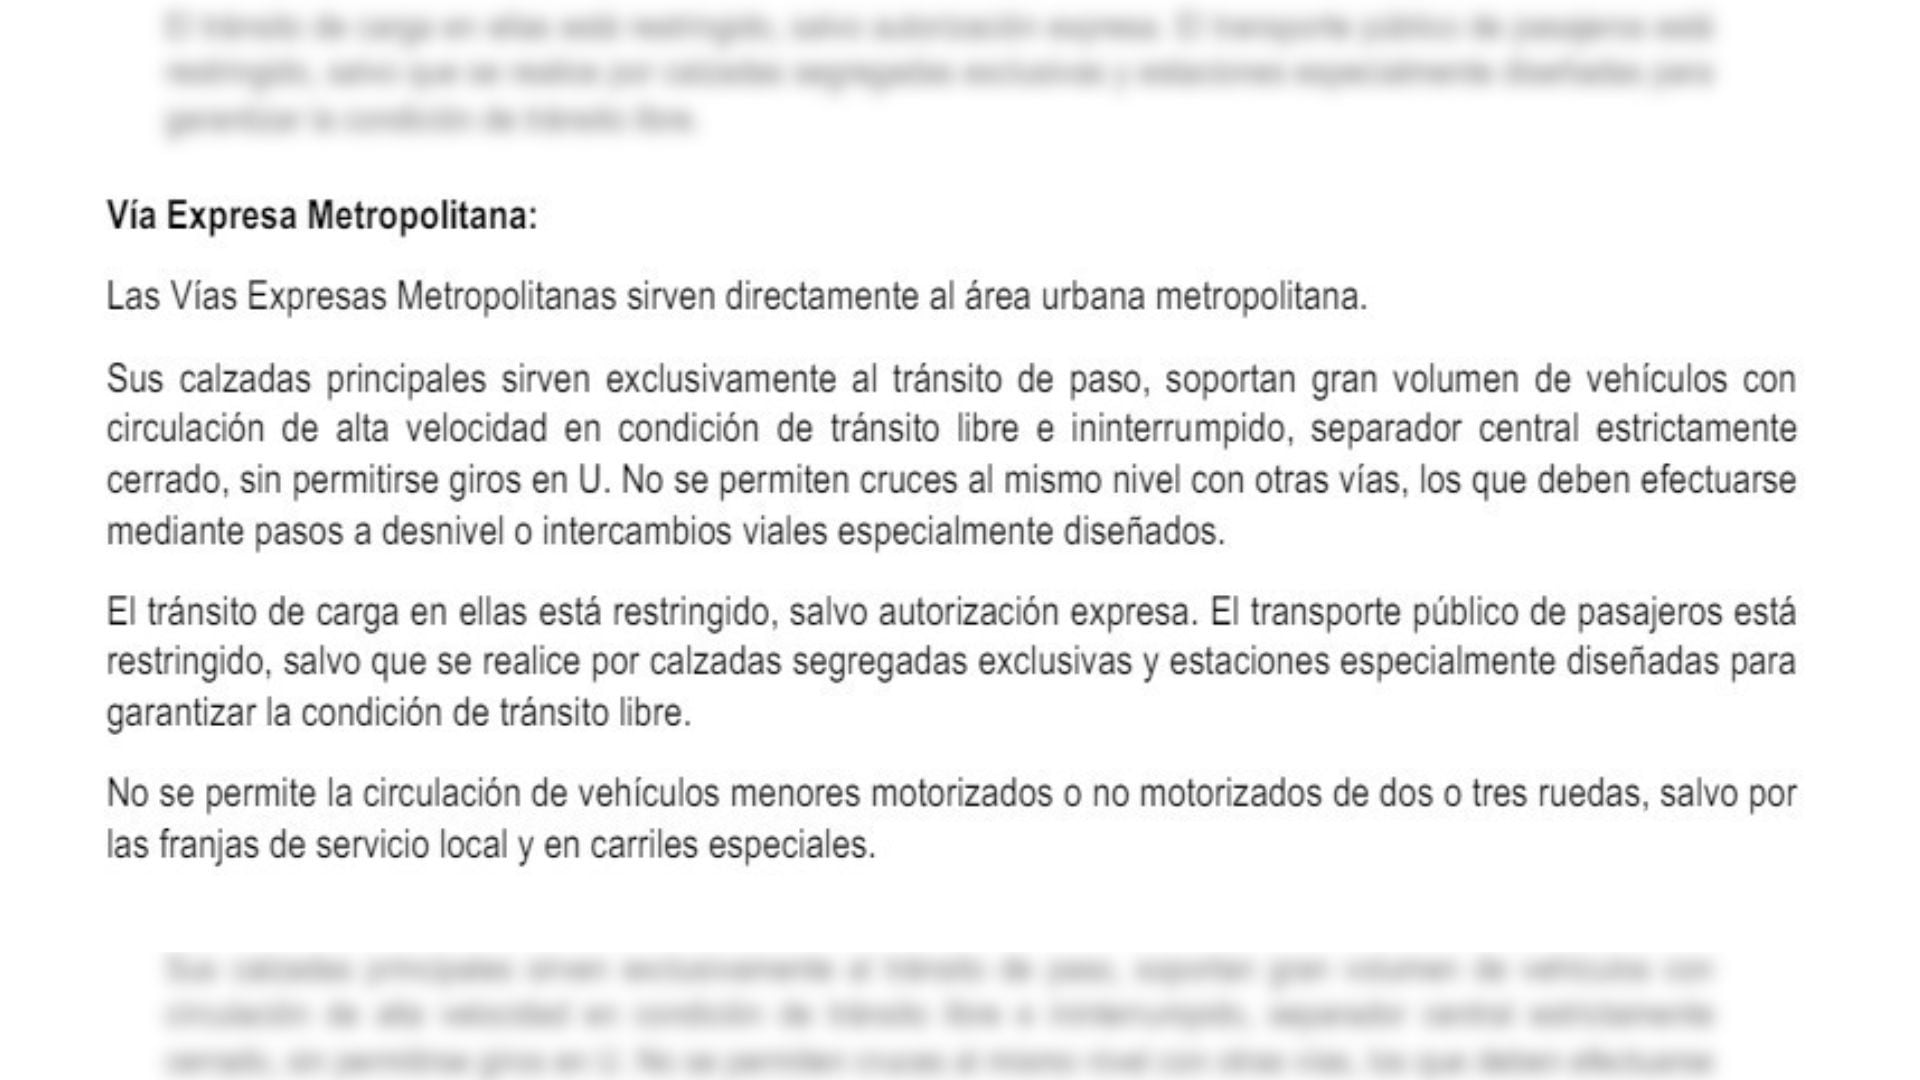 Extracto de la ordenanza municipal N° 2499 que detalla las características de una Vía Expresa.